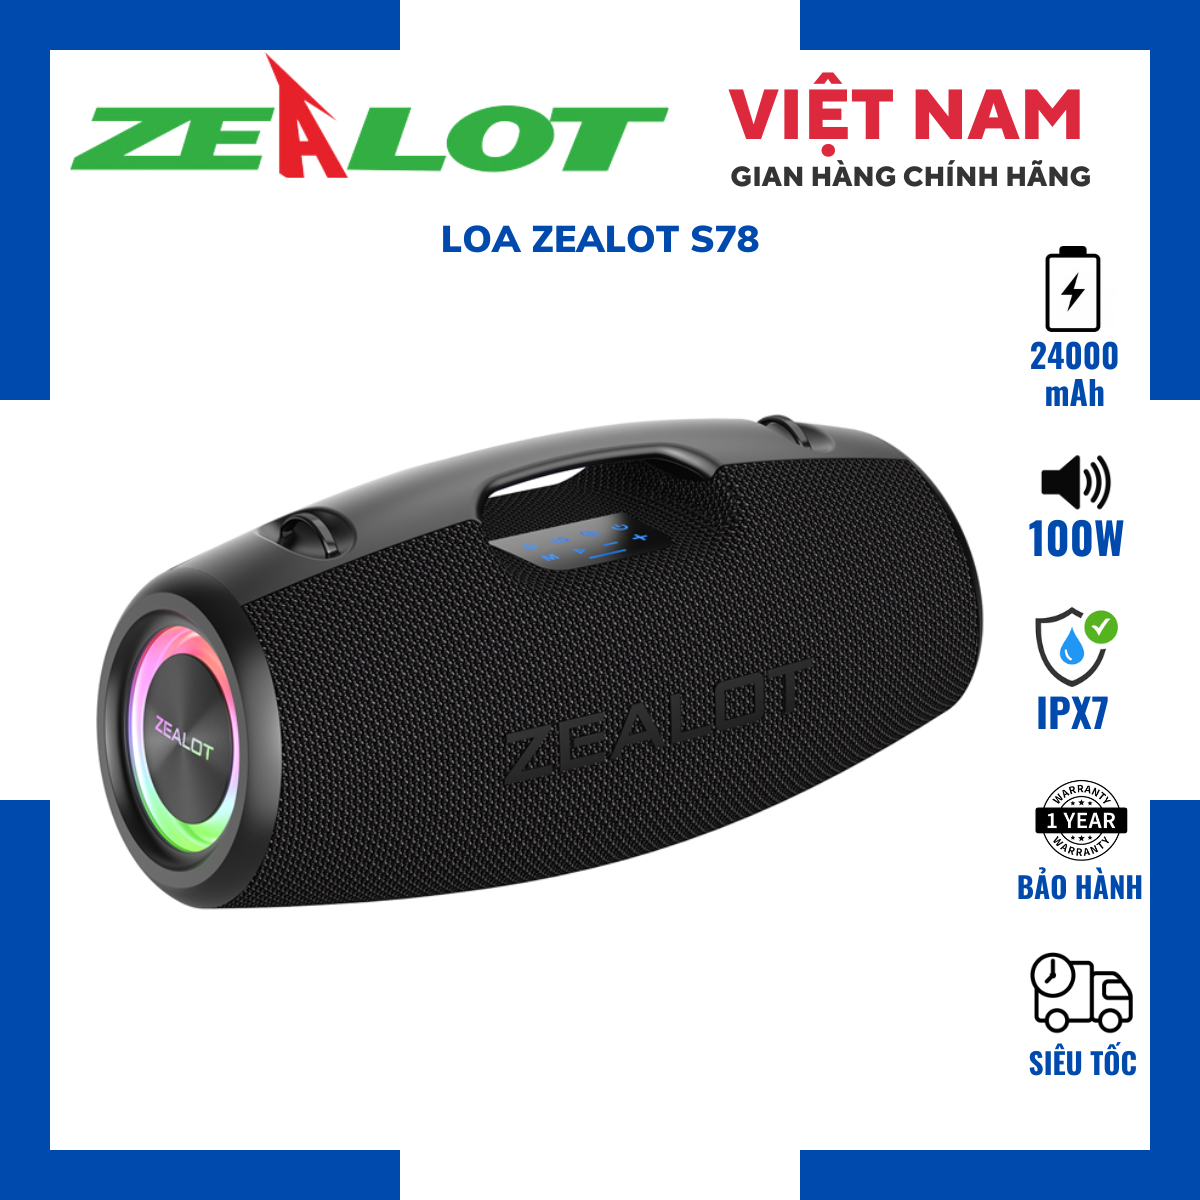 Loa Bluetooth Zealot S78| Loa Công suất 100W, Bass Mạnh, Pin Trâu 24000mAh, Kháng nước- Chính hãng, Bảo hành 12th- OBIBI